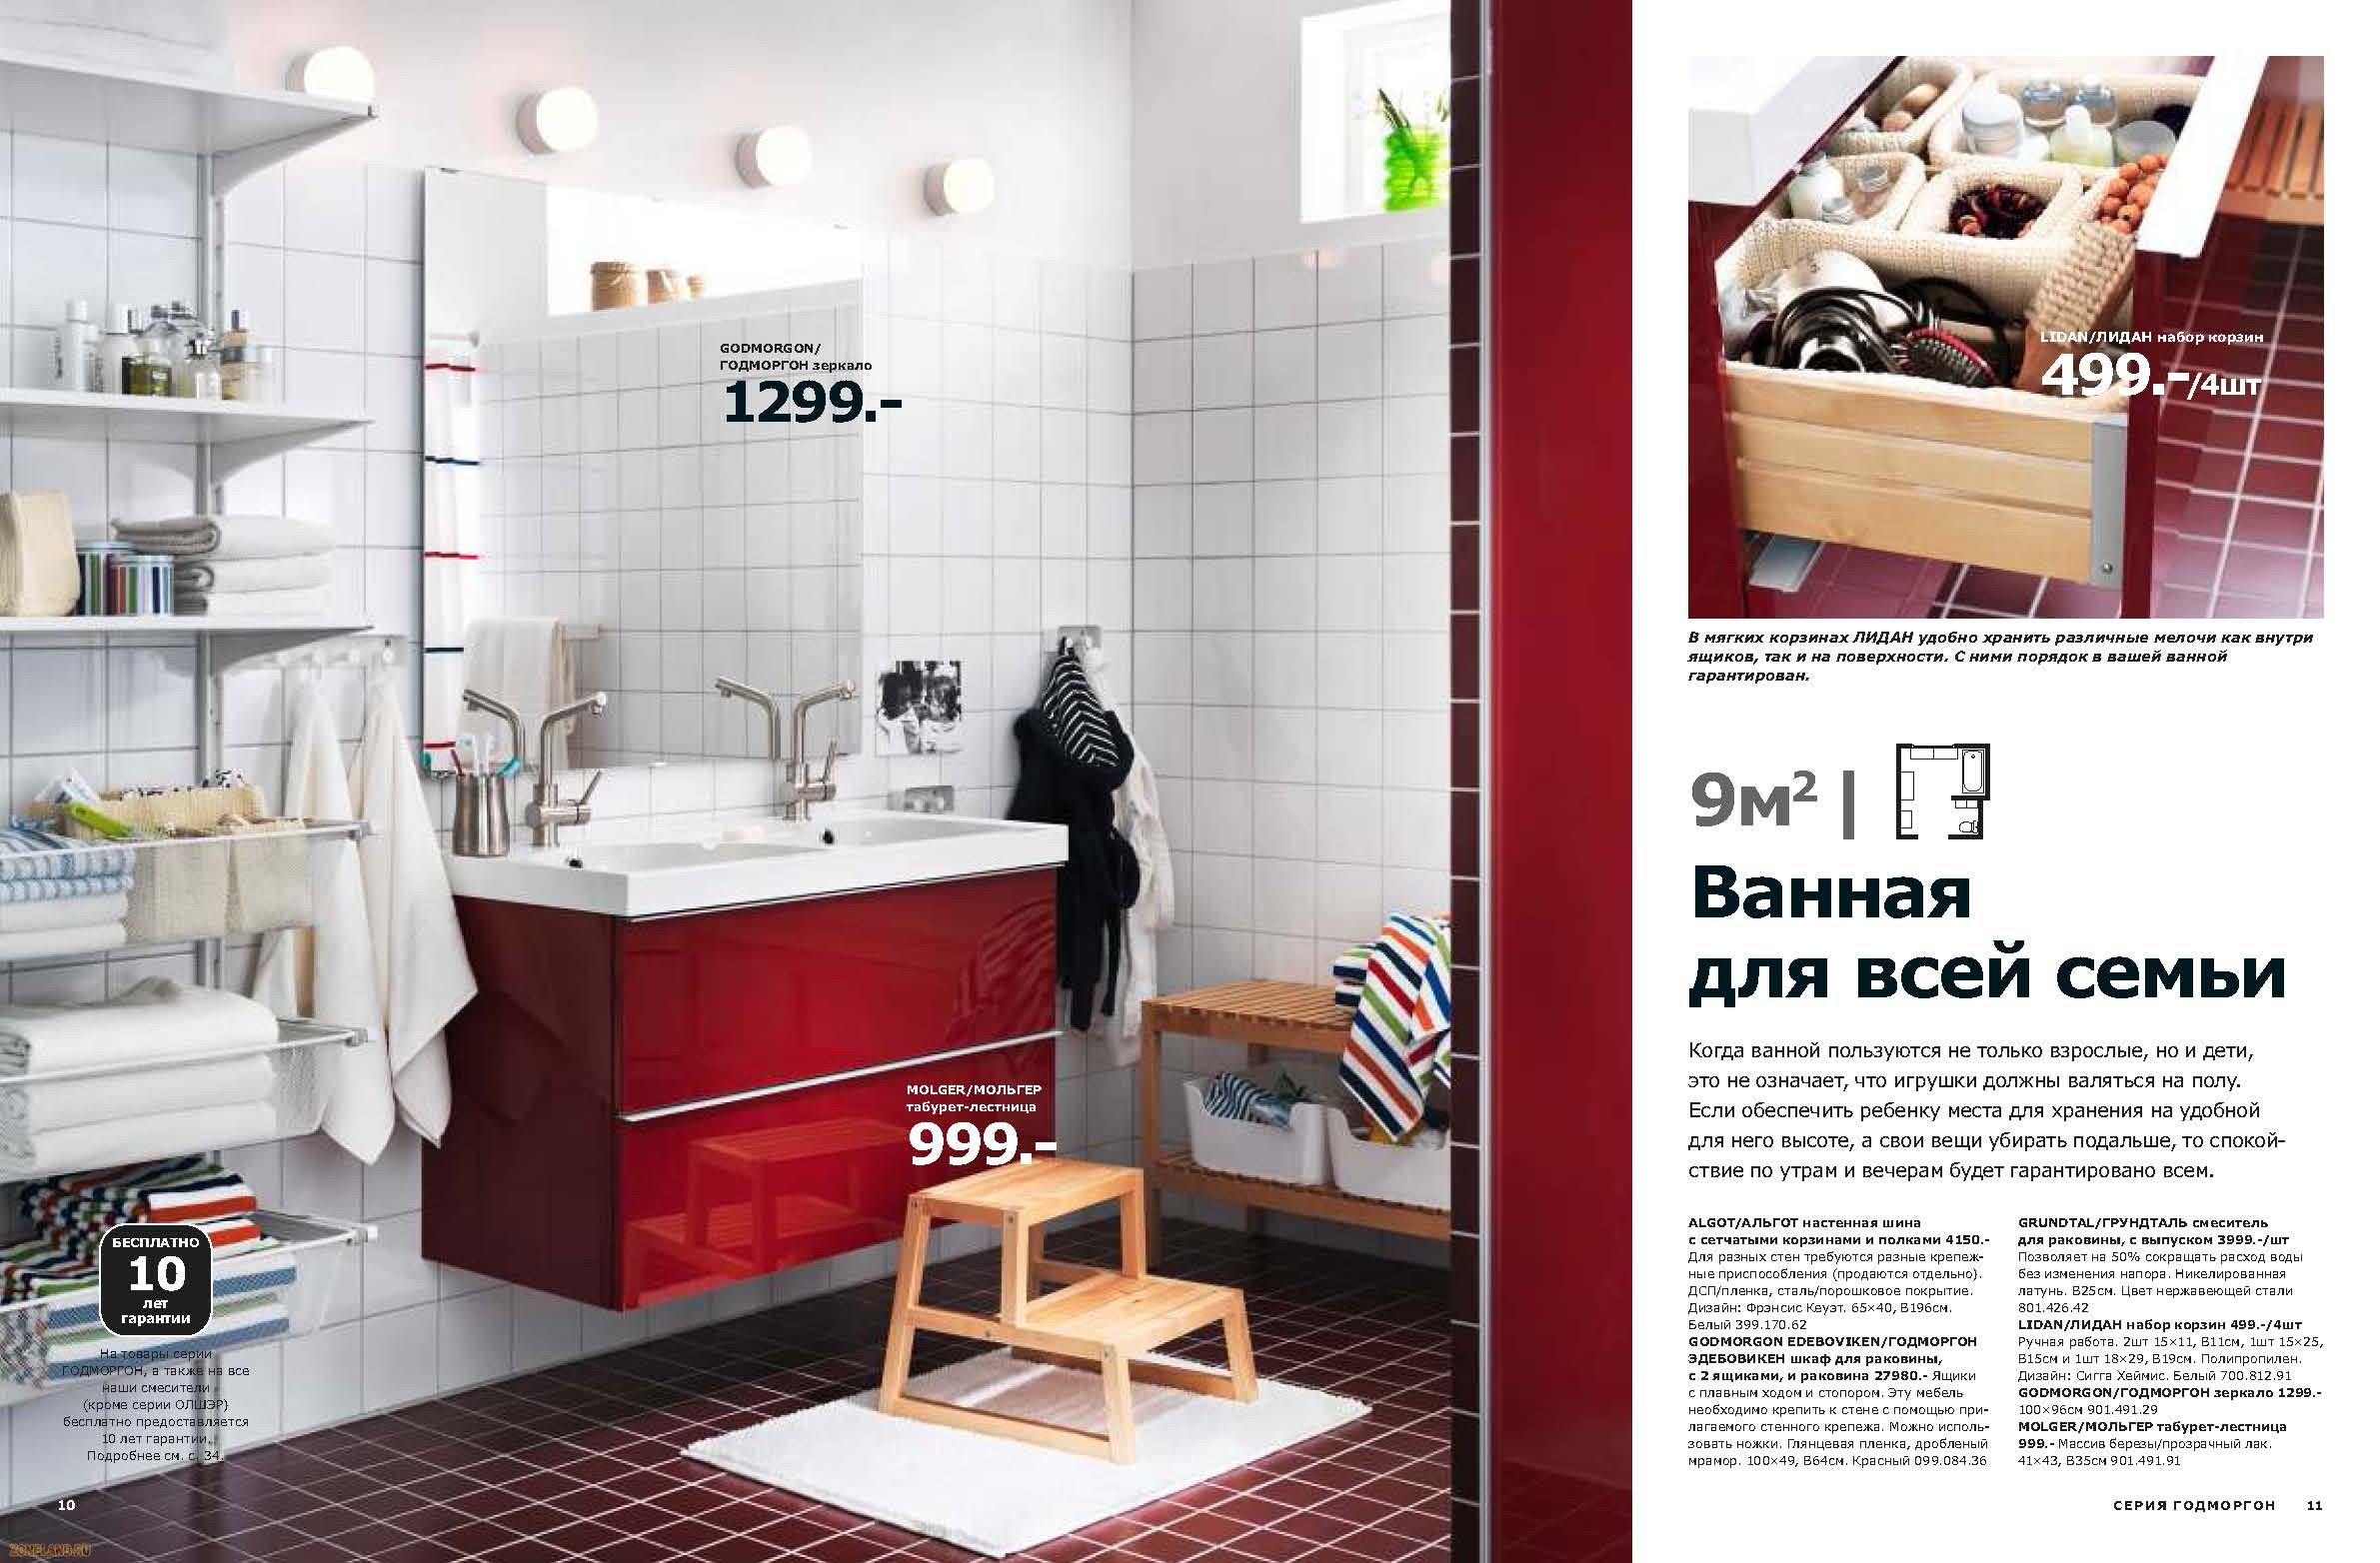 Мебель онлайн: Икеа каталог мебели для ванной